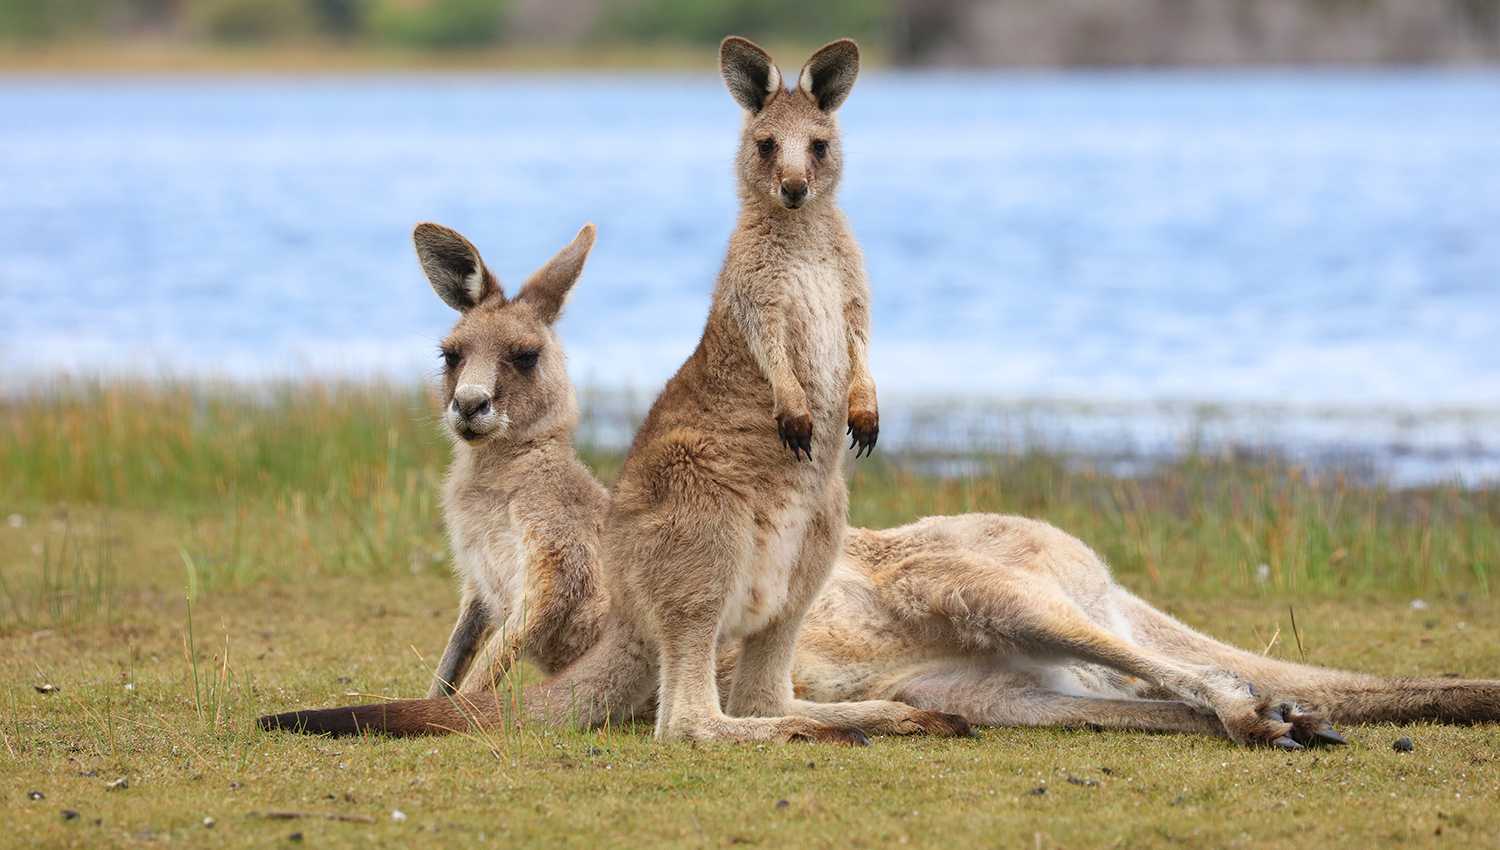 Австралийские животные плохо справились с расселением в Азию из-за адаптаций к засушливому климату